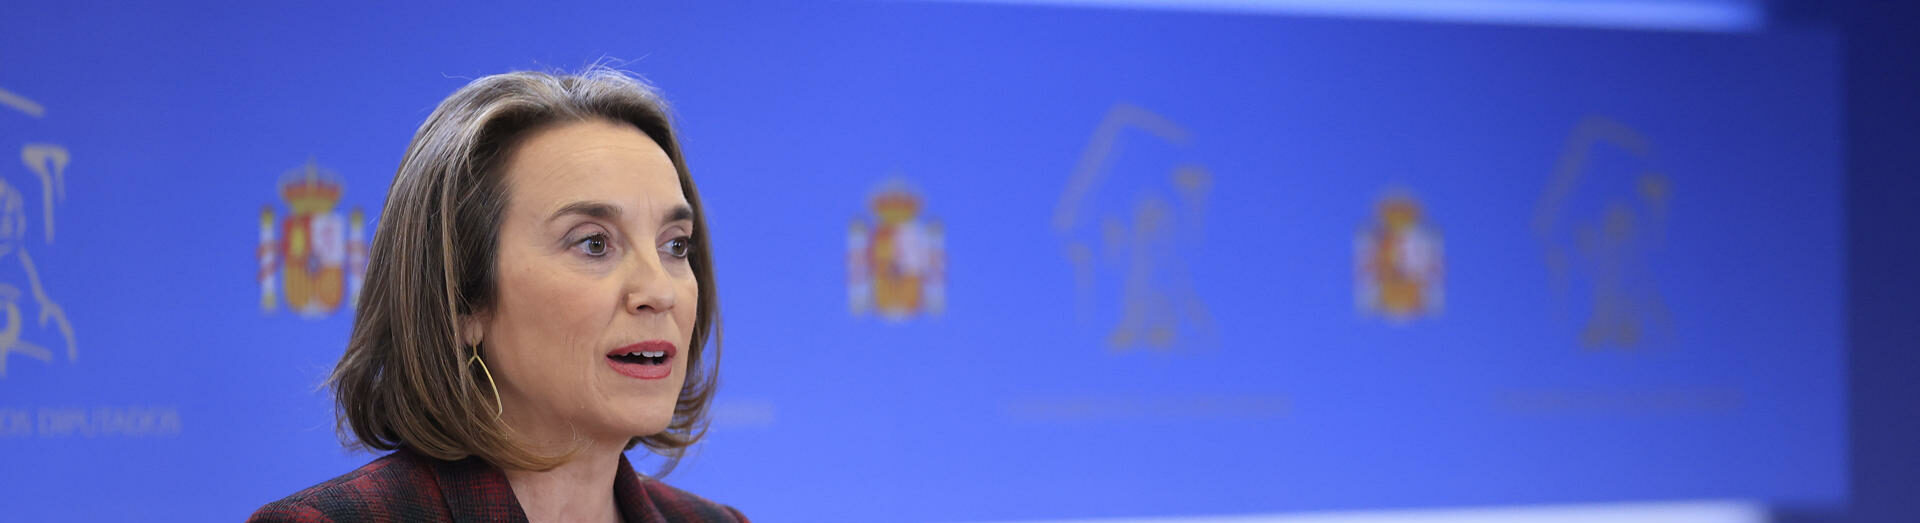 El PP afirma que "Sánchez pasará a la Historia por aprobar leyes que benefician a violadores"